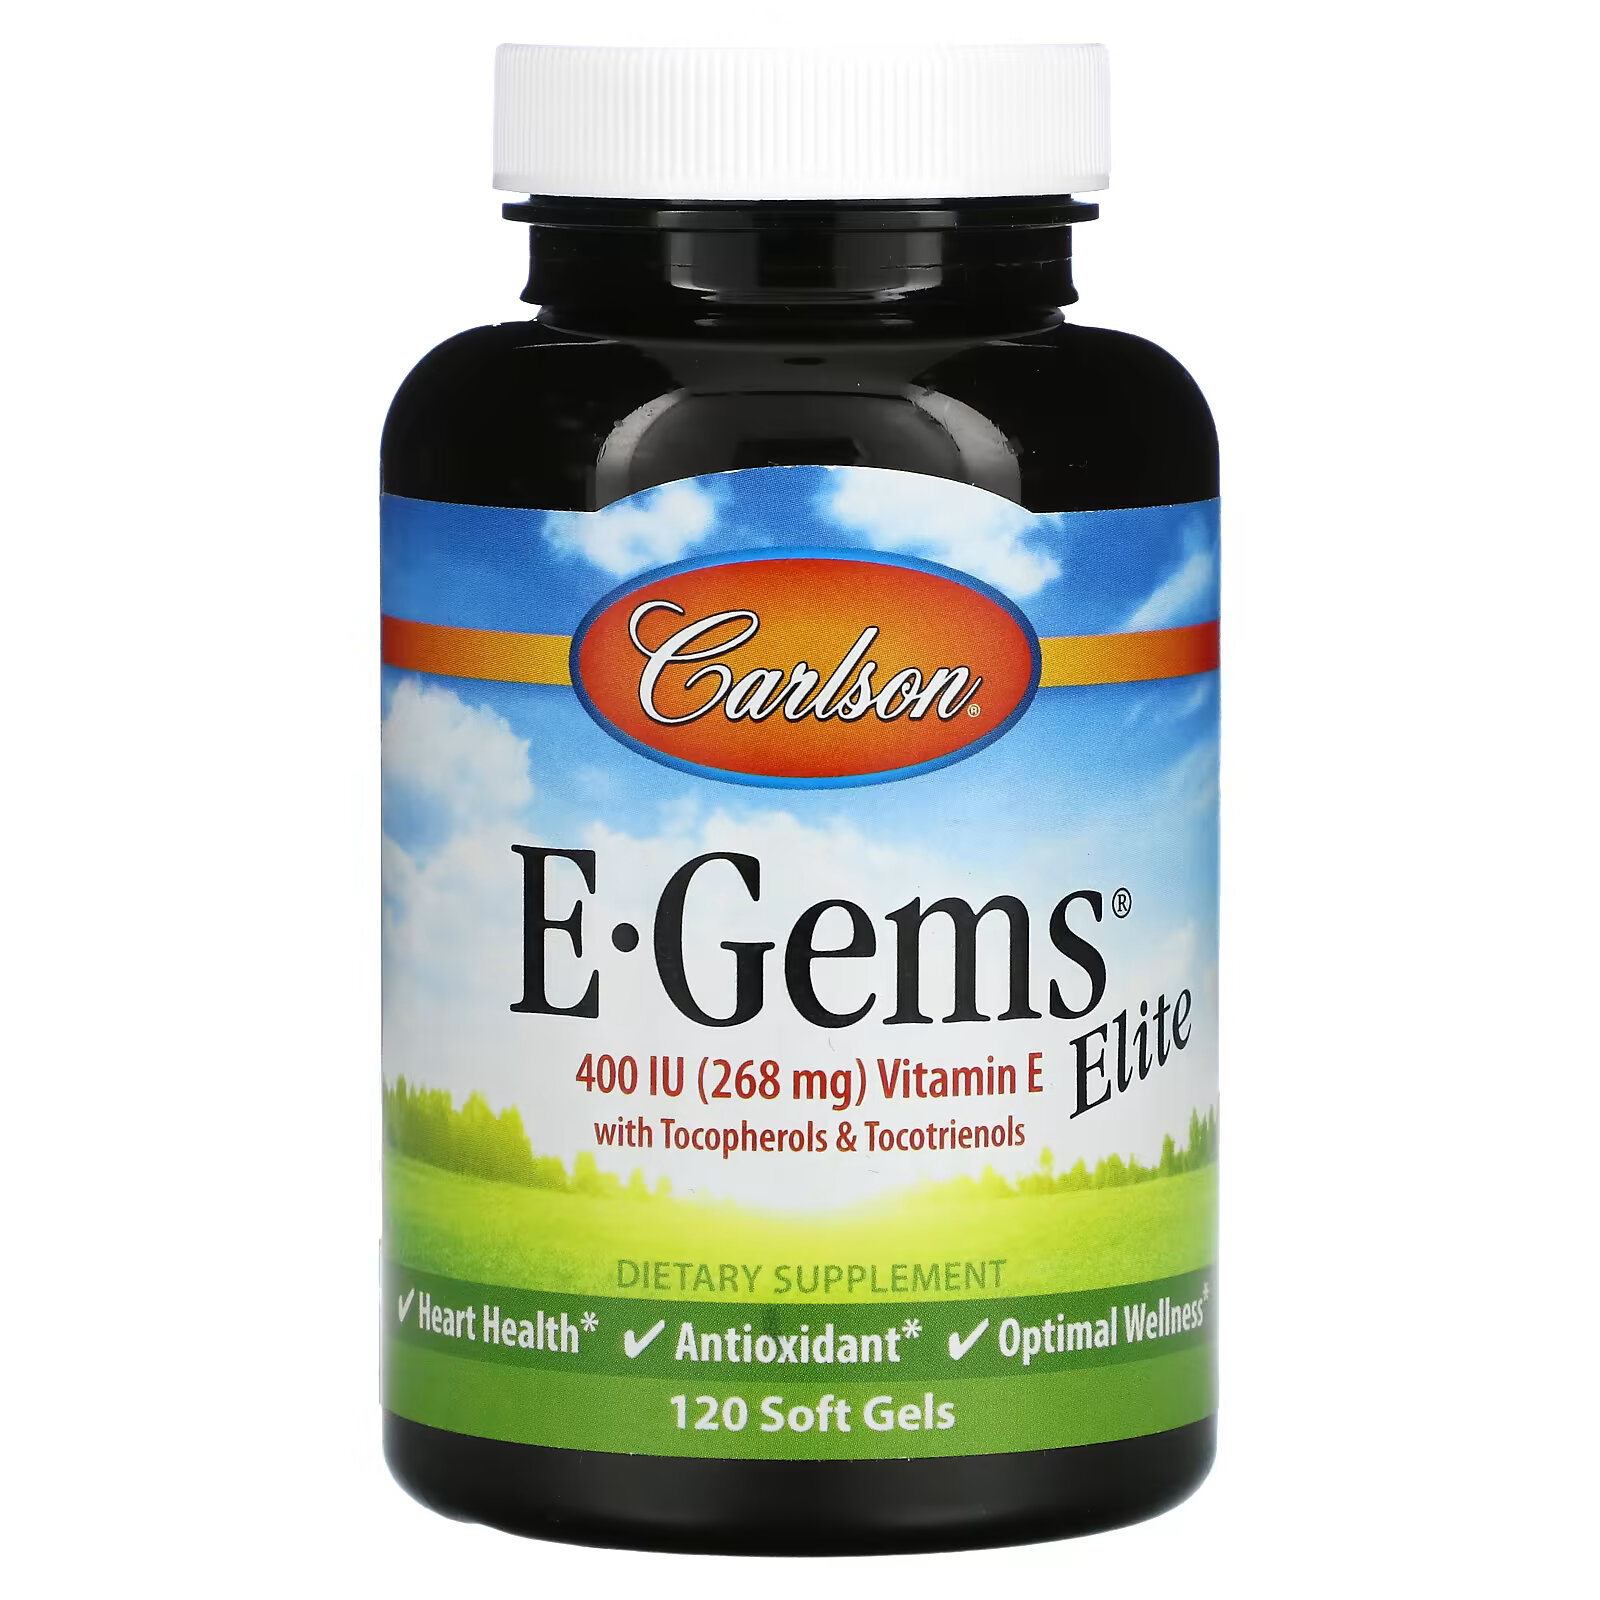 Carlson, E-Gems Elite, витамин E, 268 мг (400 МЕ), 120 мягких таблеток carlson e gems 268 мг 400 ме 140 мягких таблеток